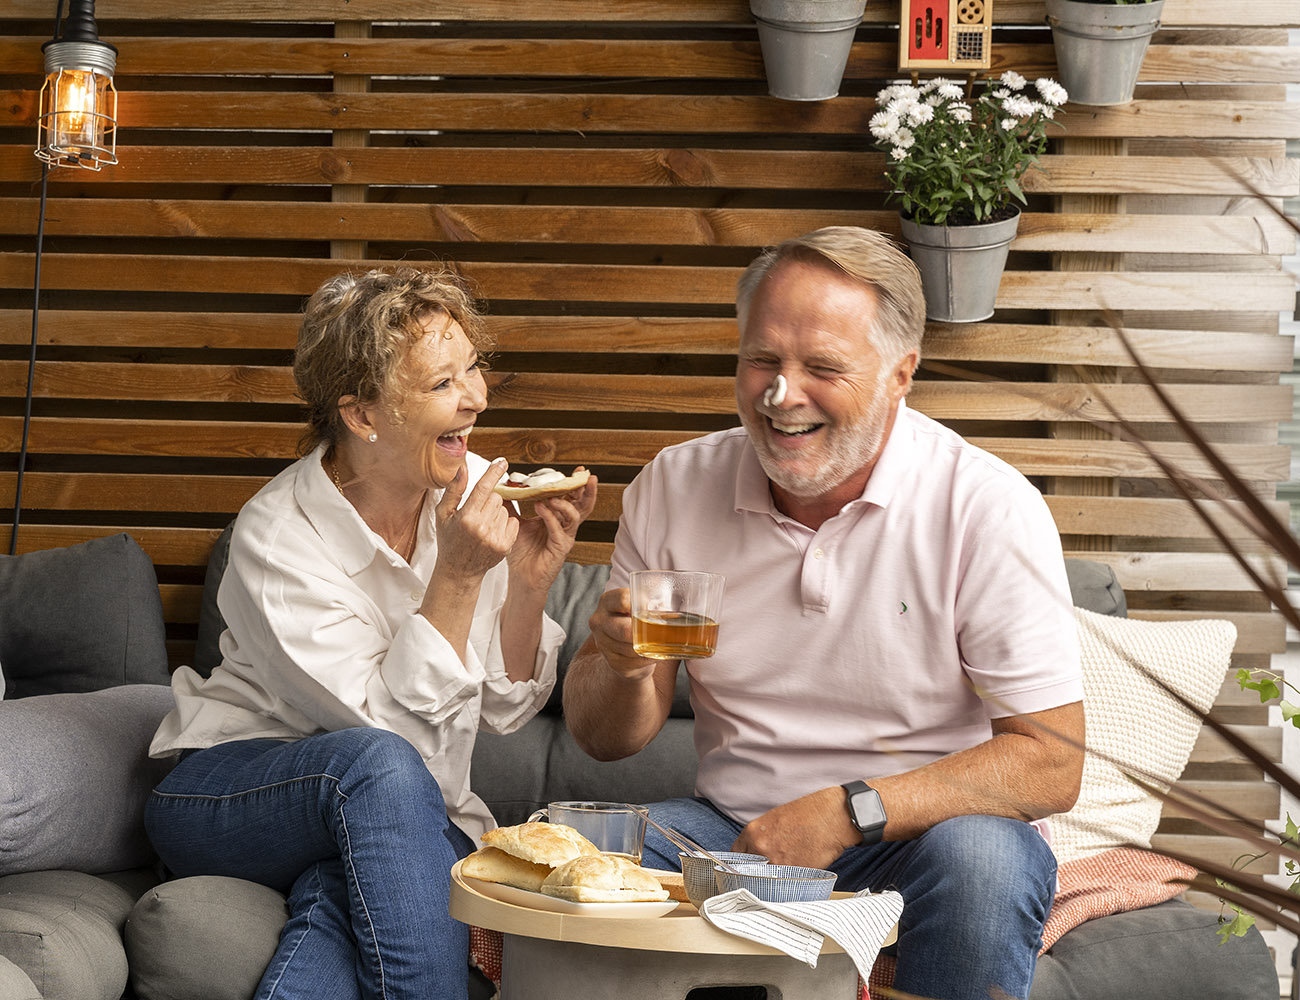 En man och kvinna som är somrigt klädda, sitter på en balkong och fikar smörgåsar och te. Mannen har fått en klick smör på sin näsa som de skrattar åt.